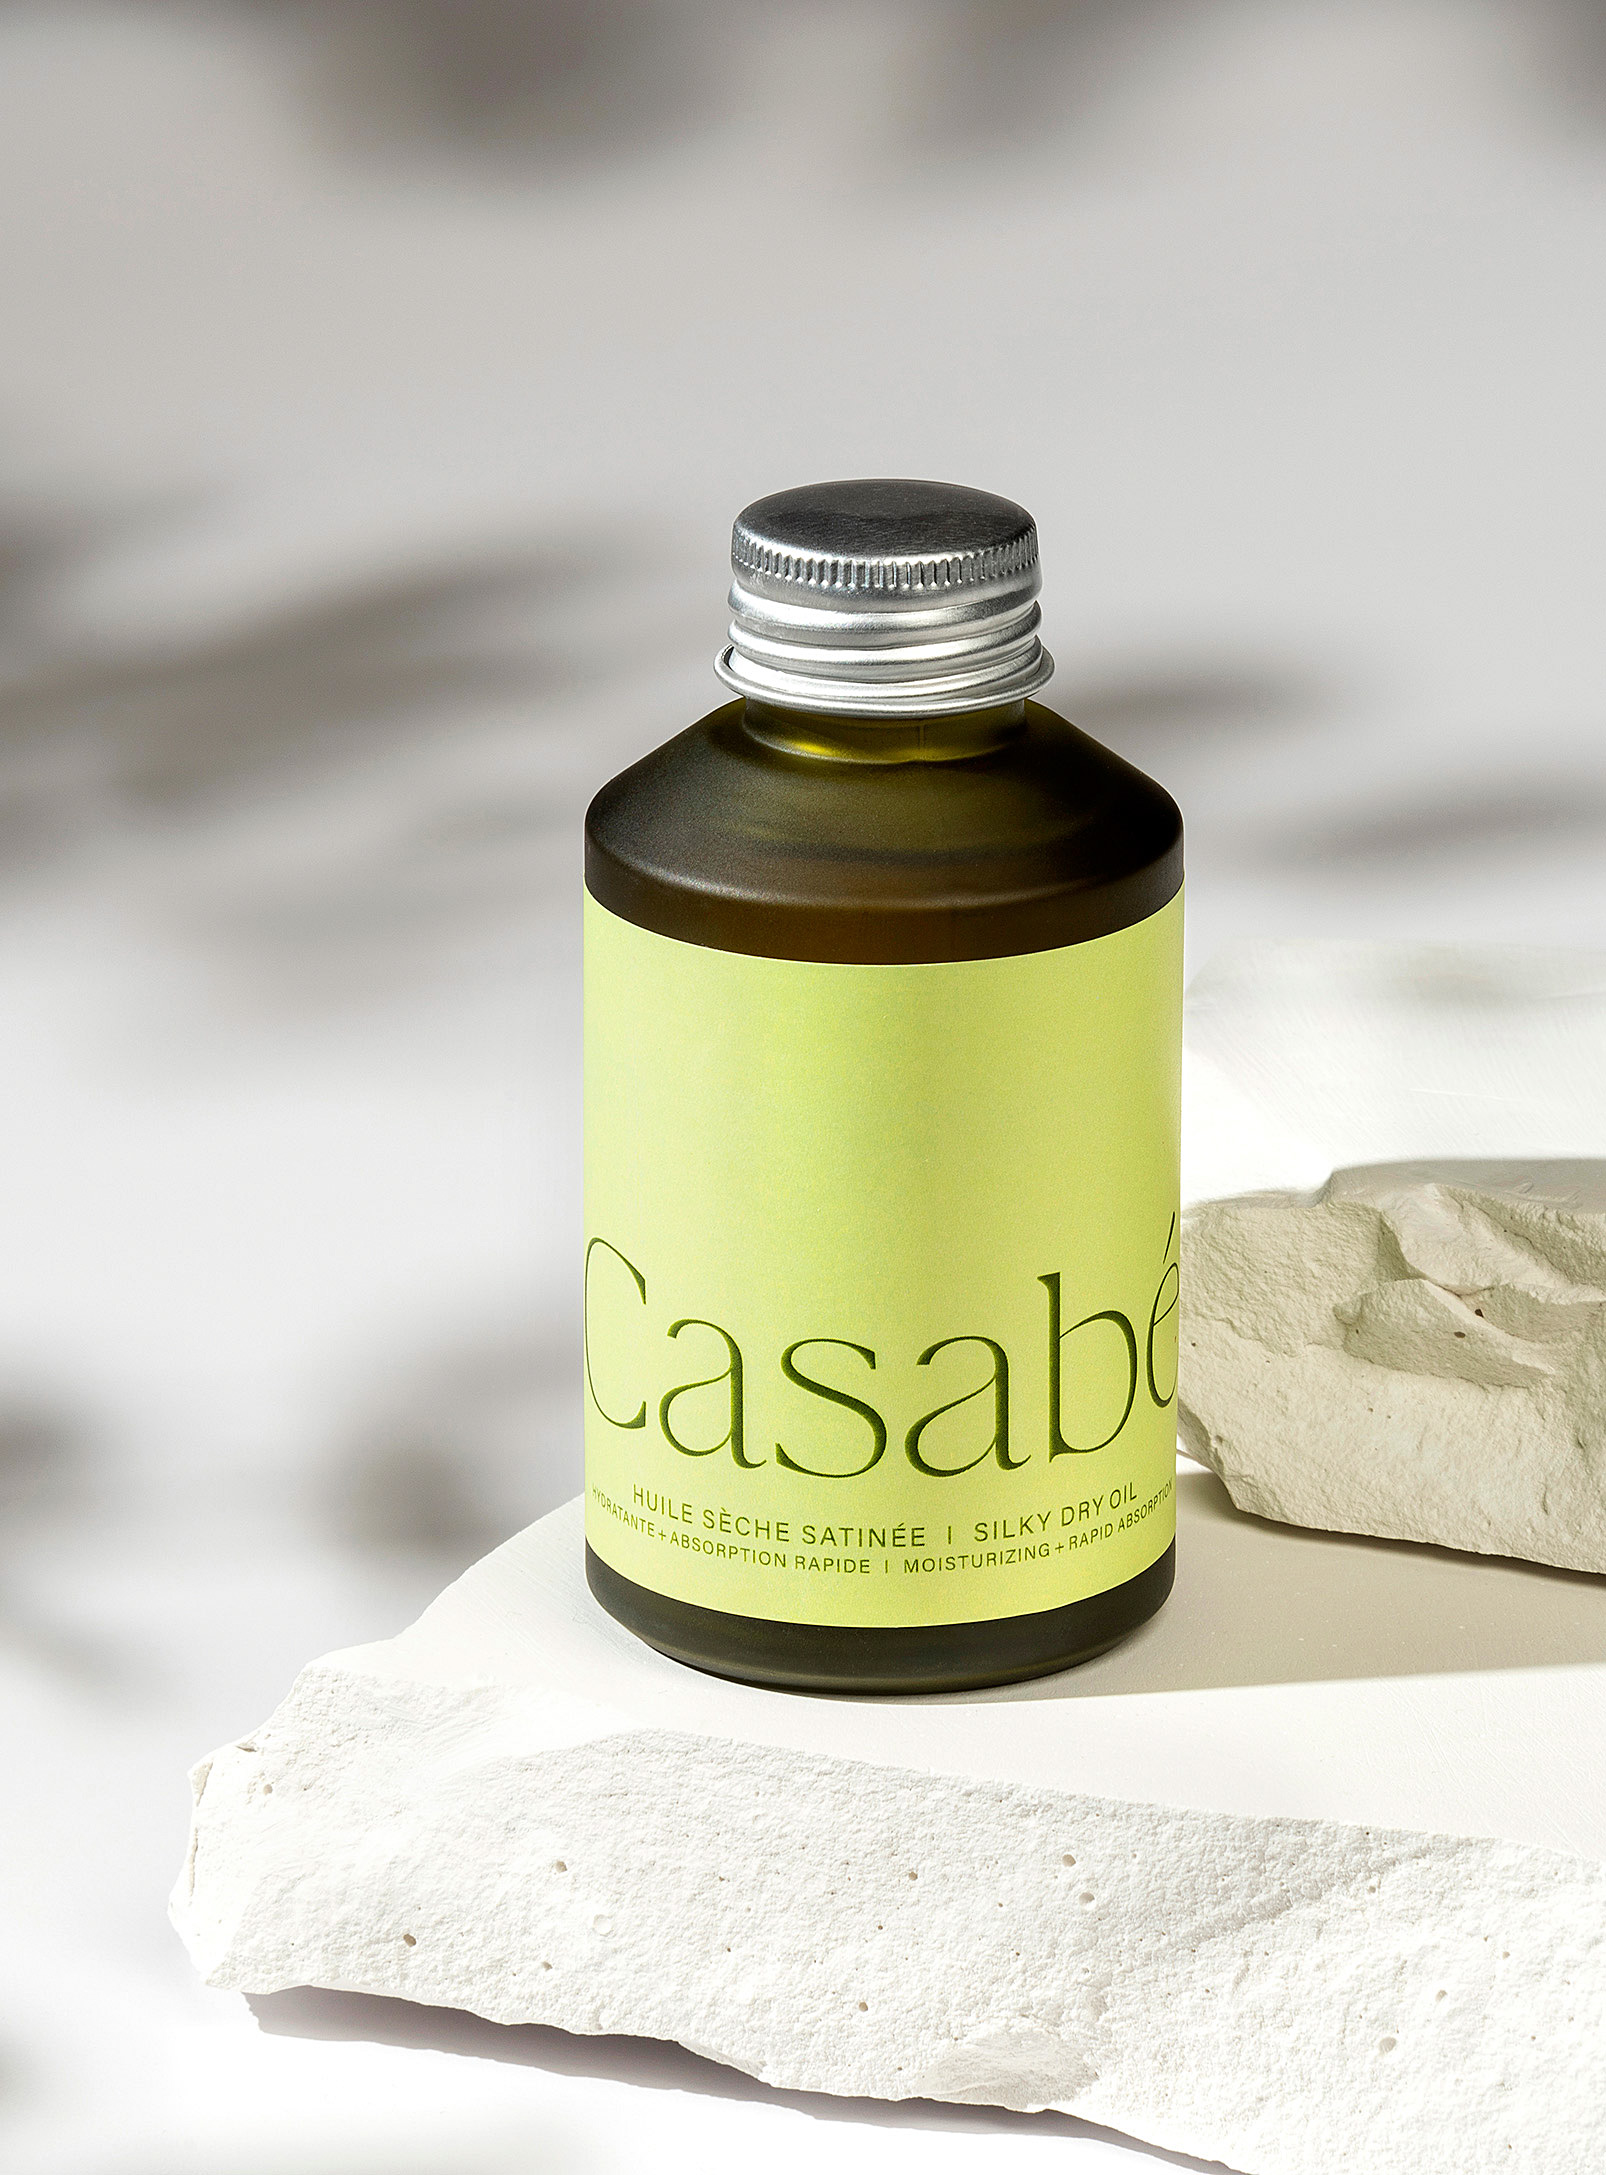 Casabé - L'huile sèche satinée